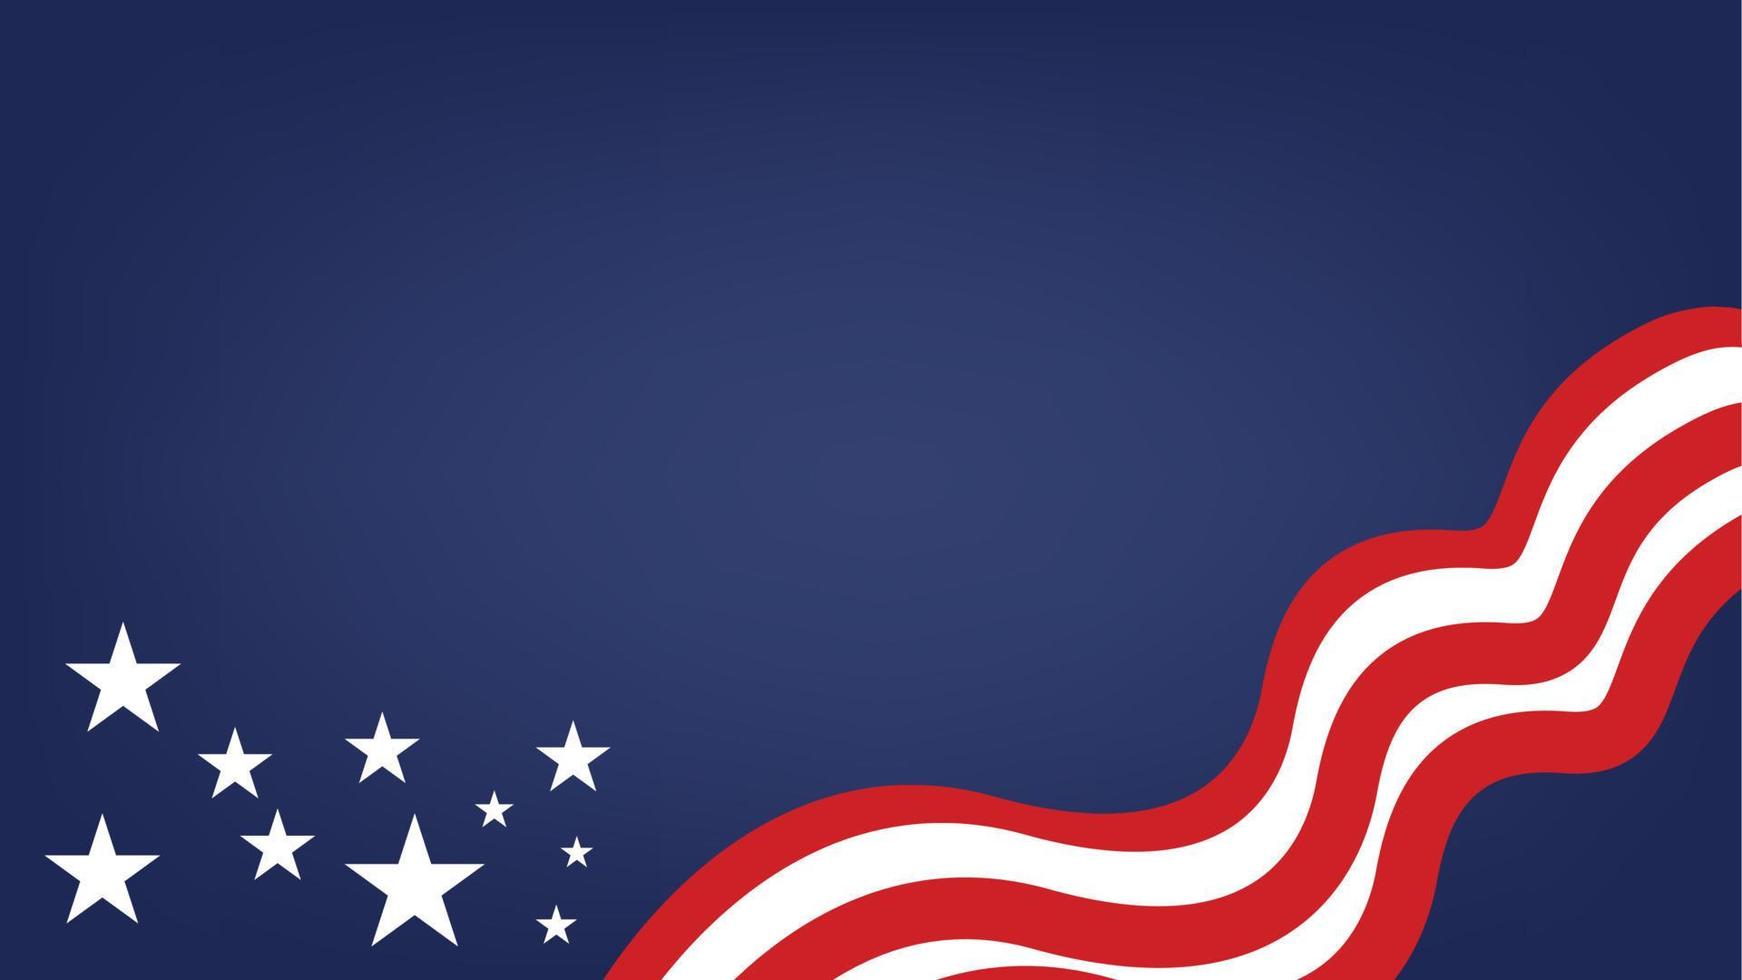 Hintergrundillustrationsvektor der amerikanischen Flagge und der Sterne. vektor